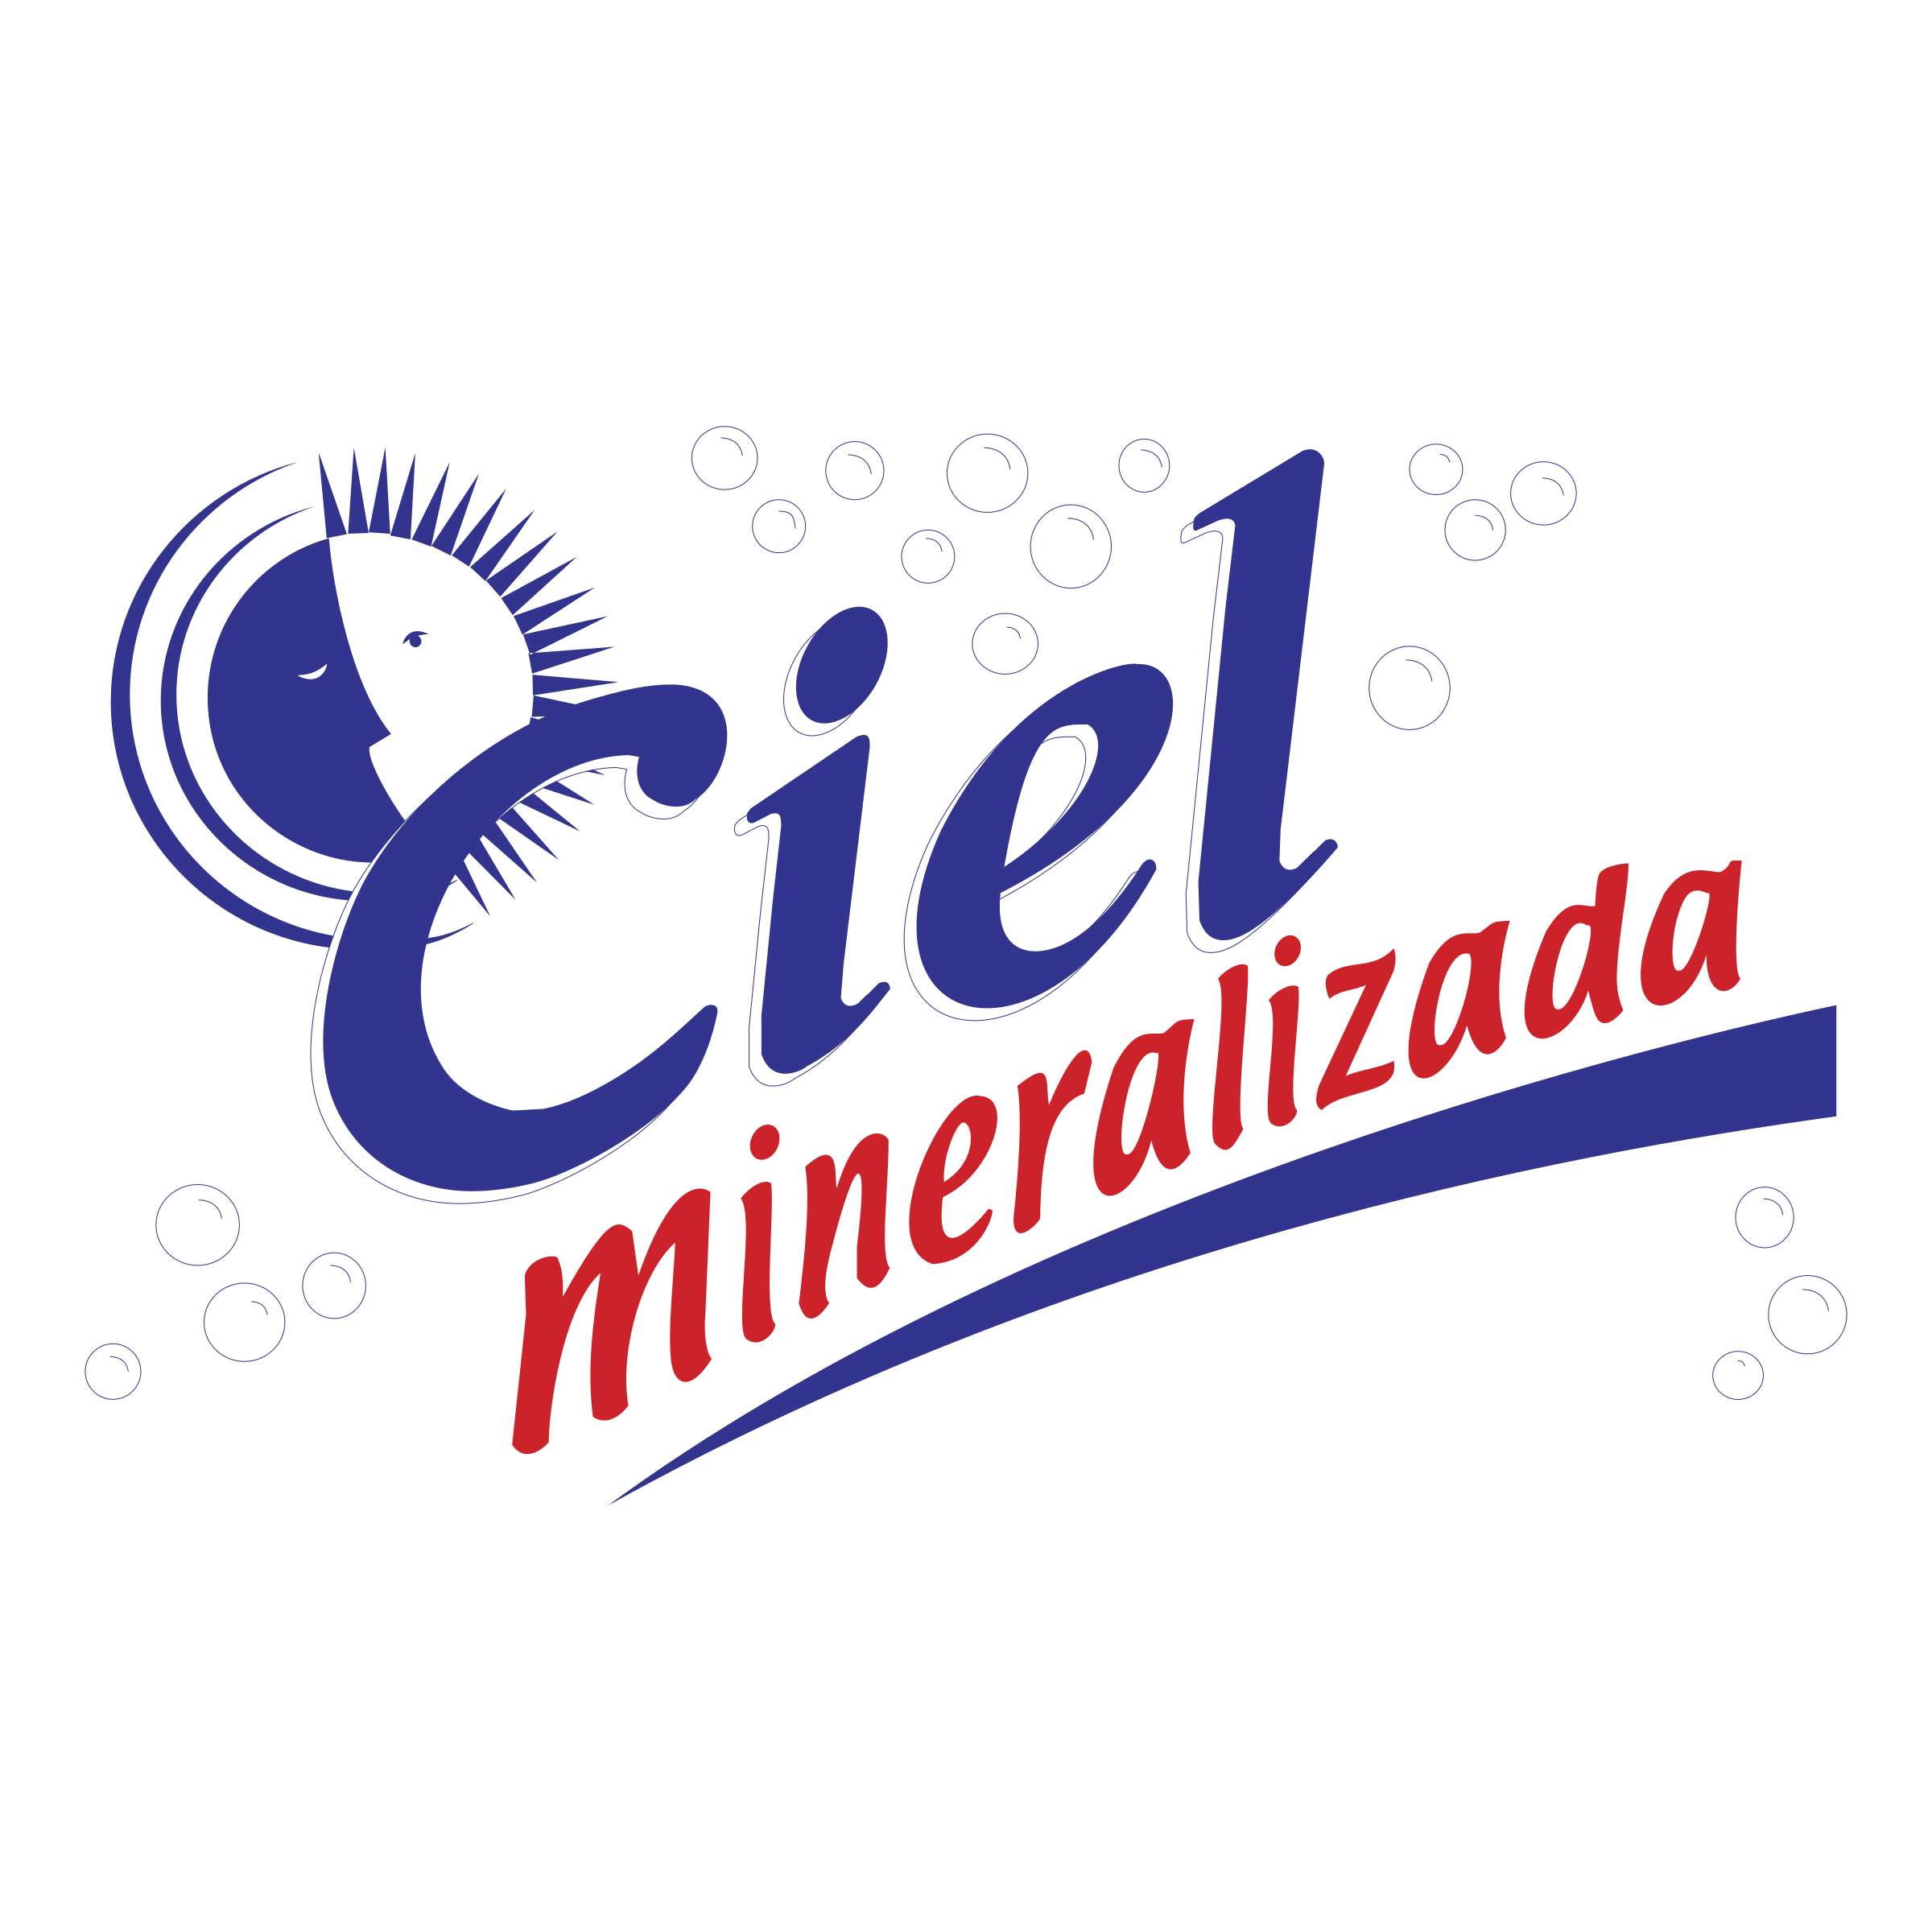 Ciel Logo - Ciel Mineralizada Logo PNG Transparent & SVG Vector - Freebie Supply